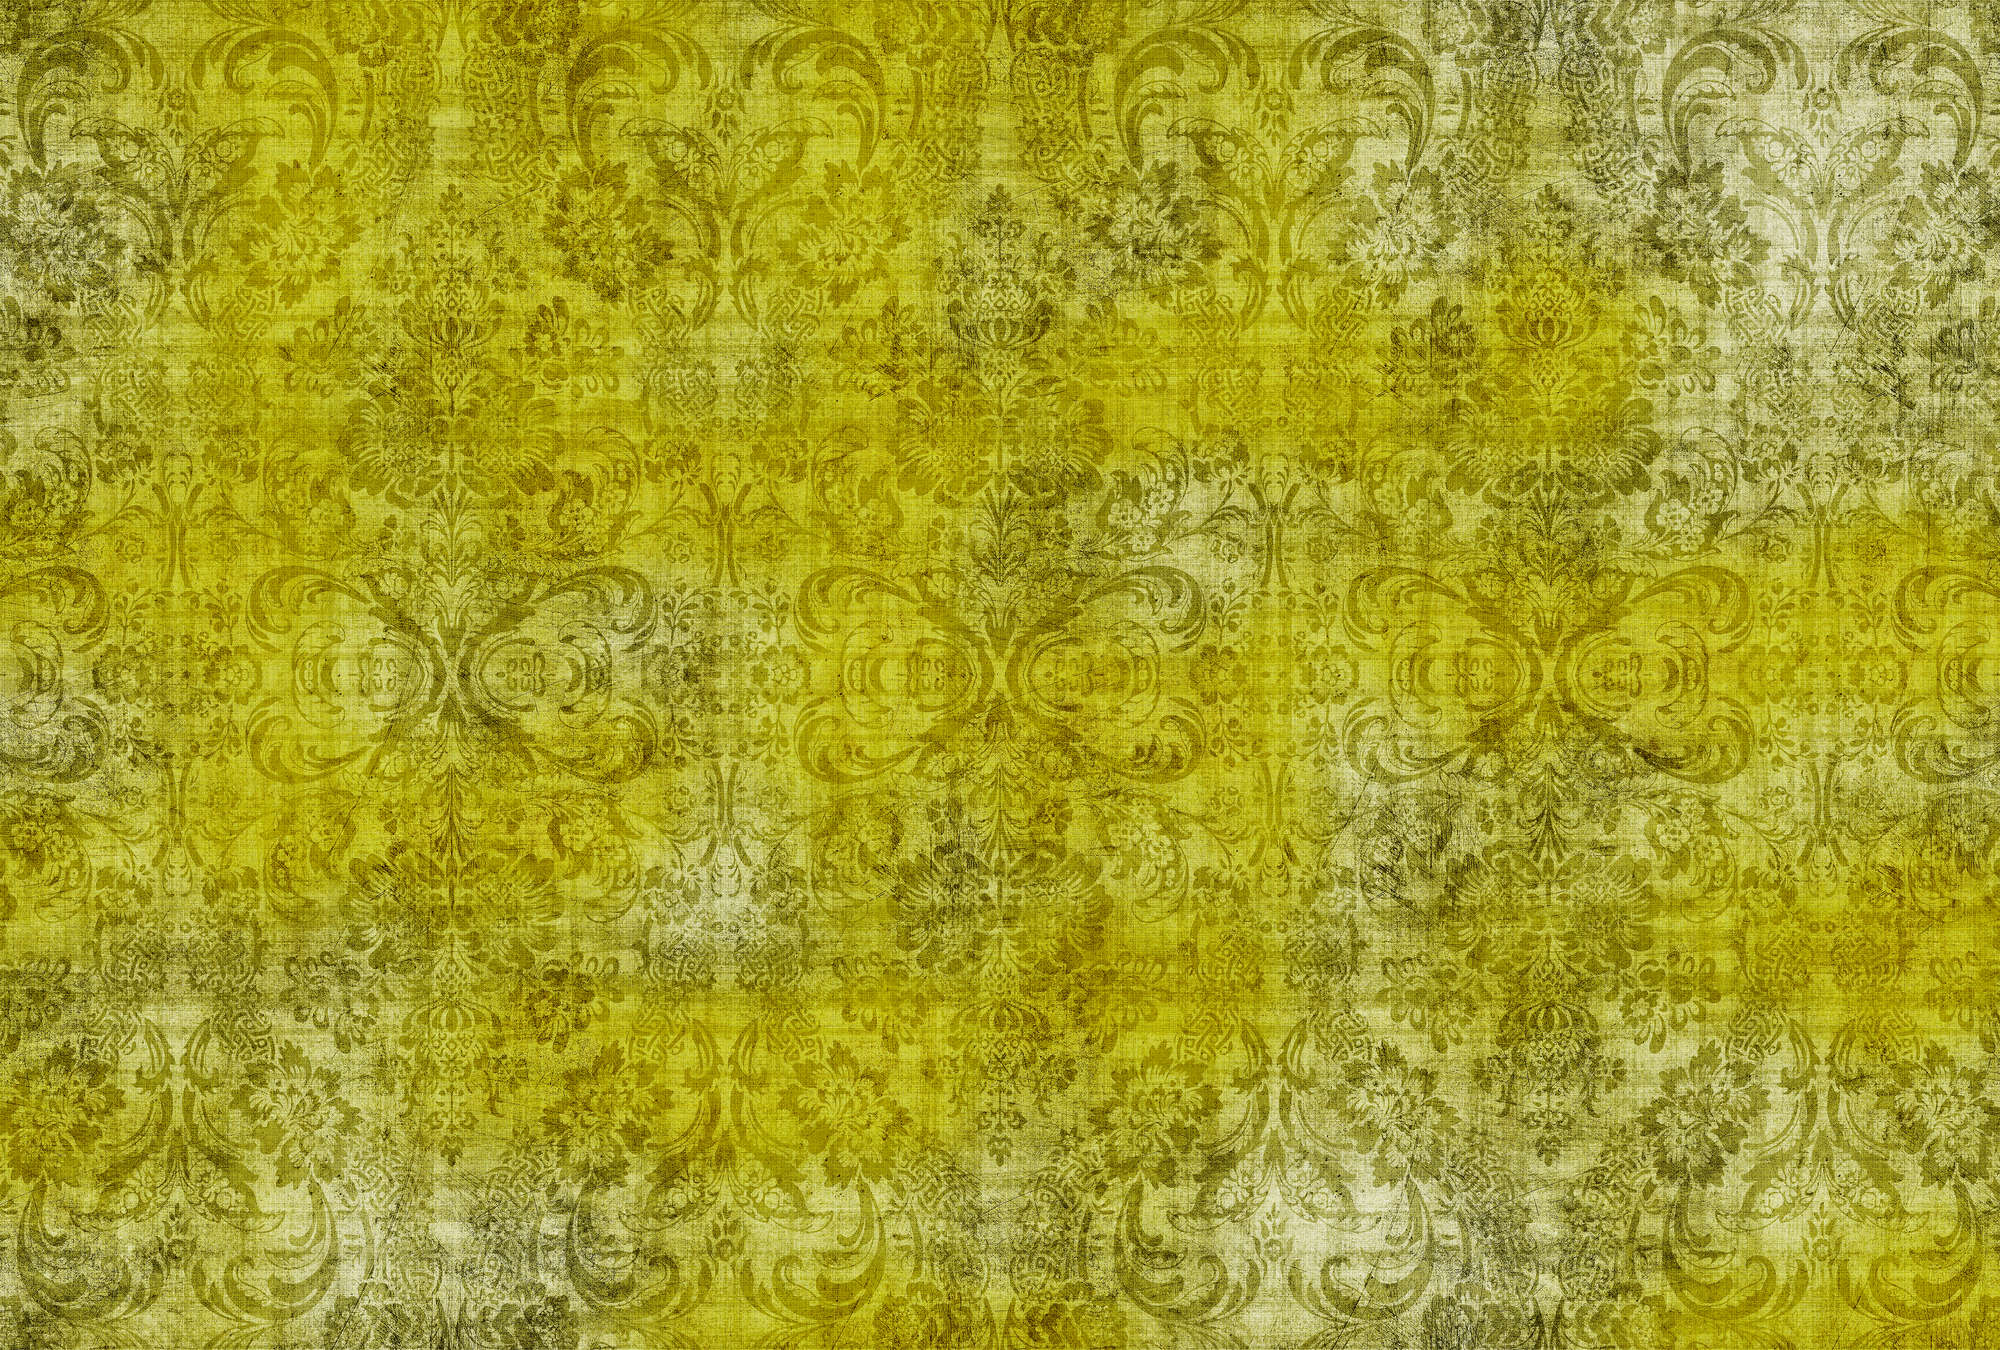             Oud damast 1 - Ornamenten op geel-motief fotobehang in natuurlijke linnenstructuur - Geel | parelmoer glad vlies
        